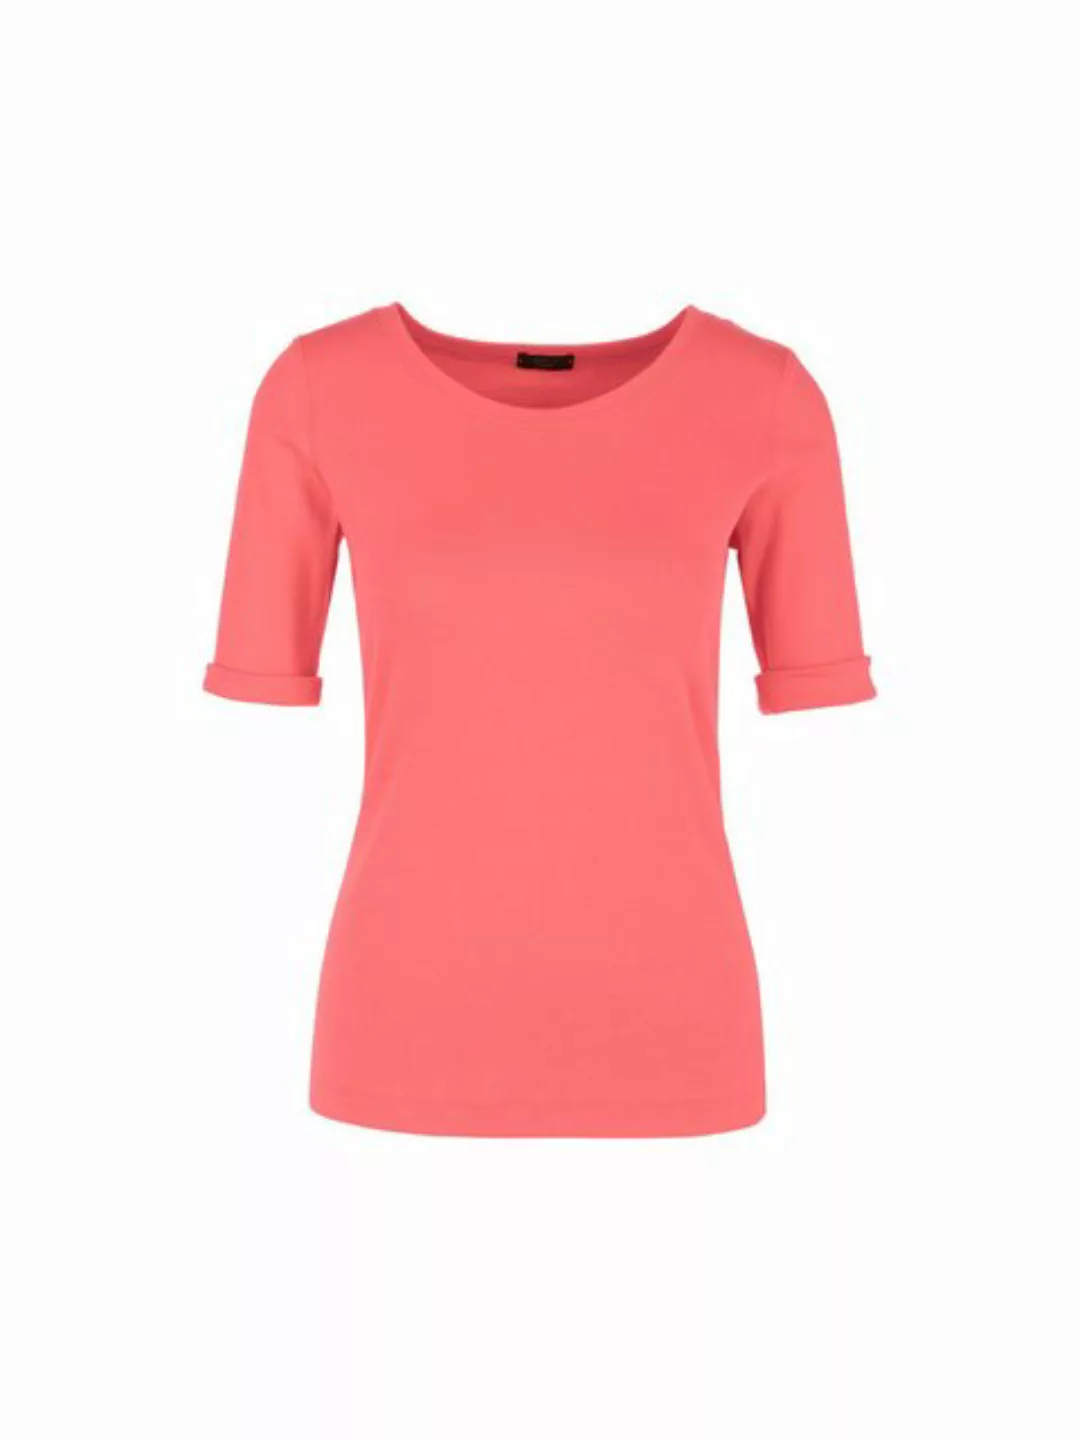 Marc Cain T-Shirt Graphic Booster Premium Damenmode Körpernahes T-Shirt mit günstig online kaufen